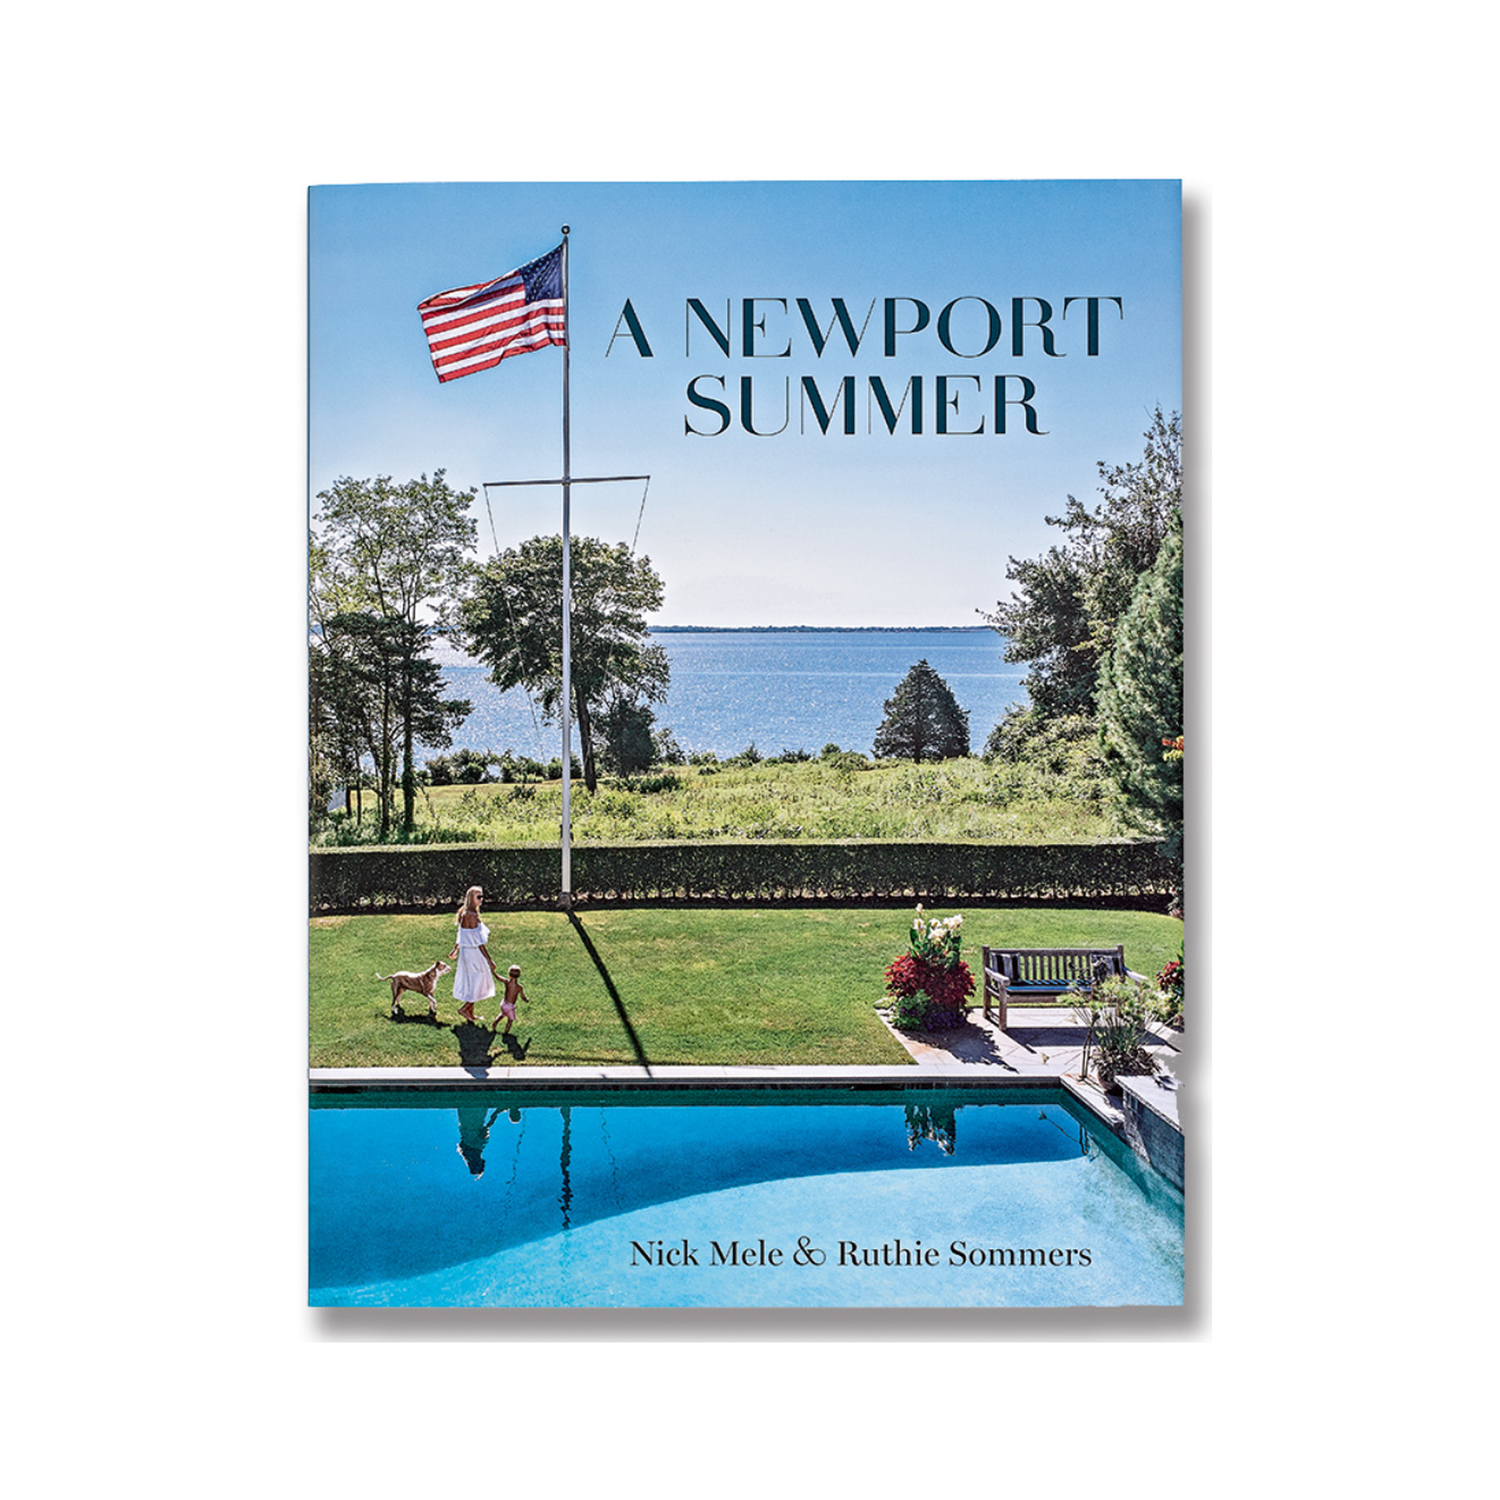 Book A Newport Summer